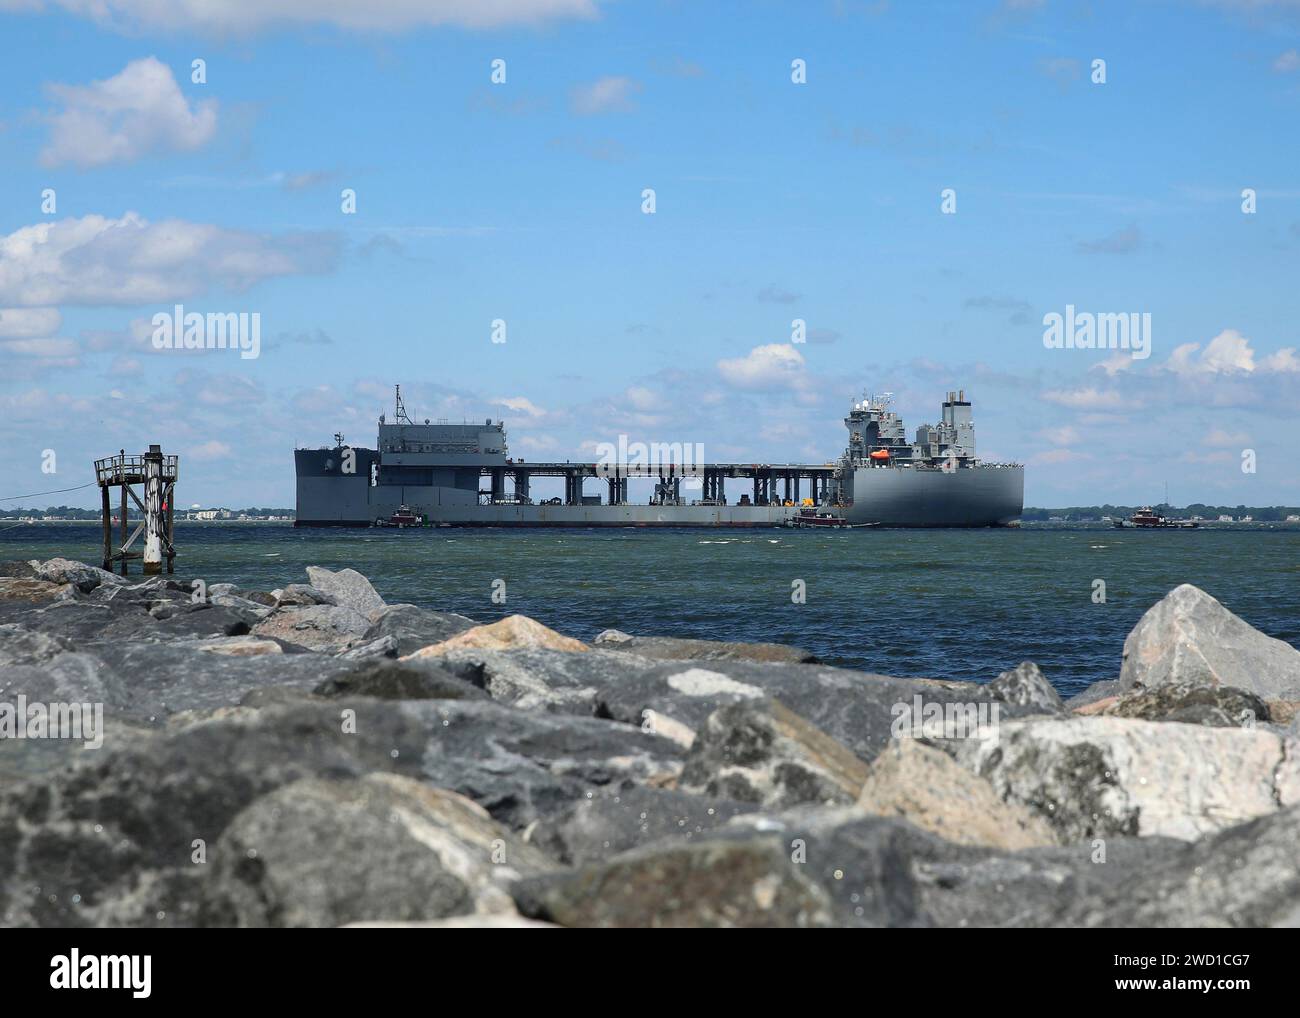 Le navire de base mobile expéditionnaire USNS Lewis B. Puller s'arrête dans la base navale de Norfolk, en Virginie. Banque D'Images